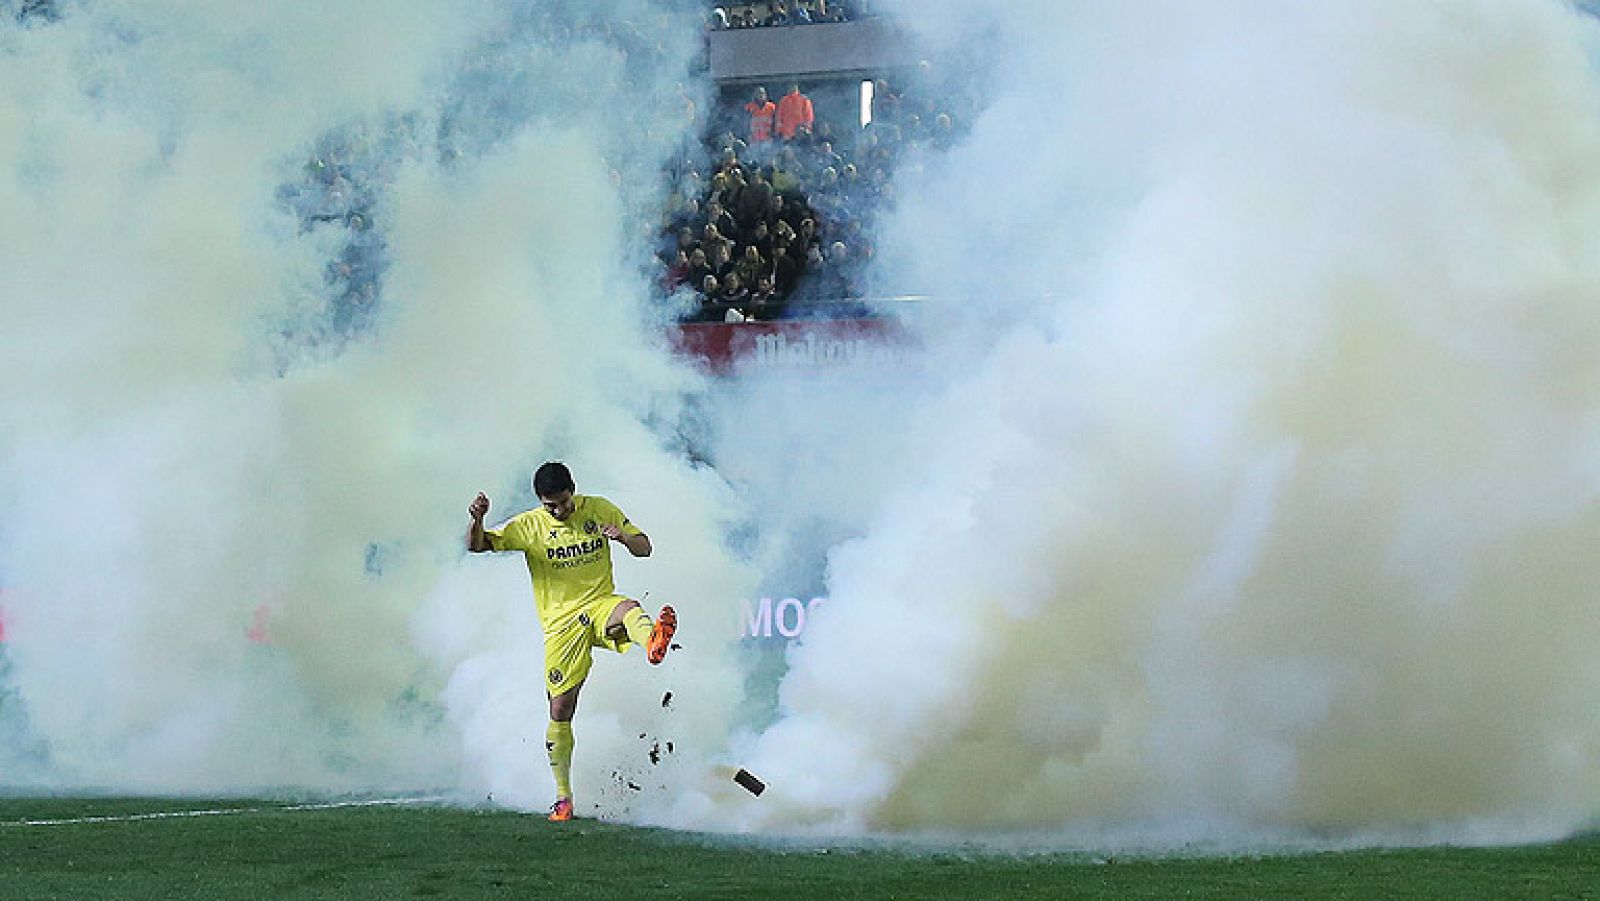 El lanzamiento de un bote de humo provocó la detención del partido entre Villarreal y Celta, que finalmente pudo terminarse con victoria de los vigueses.